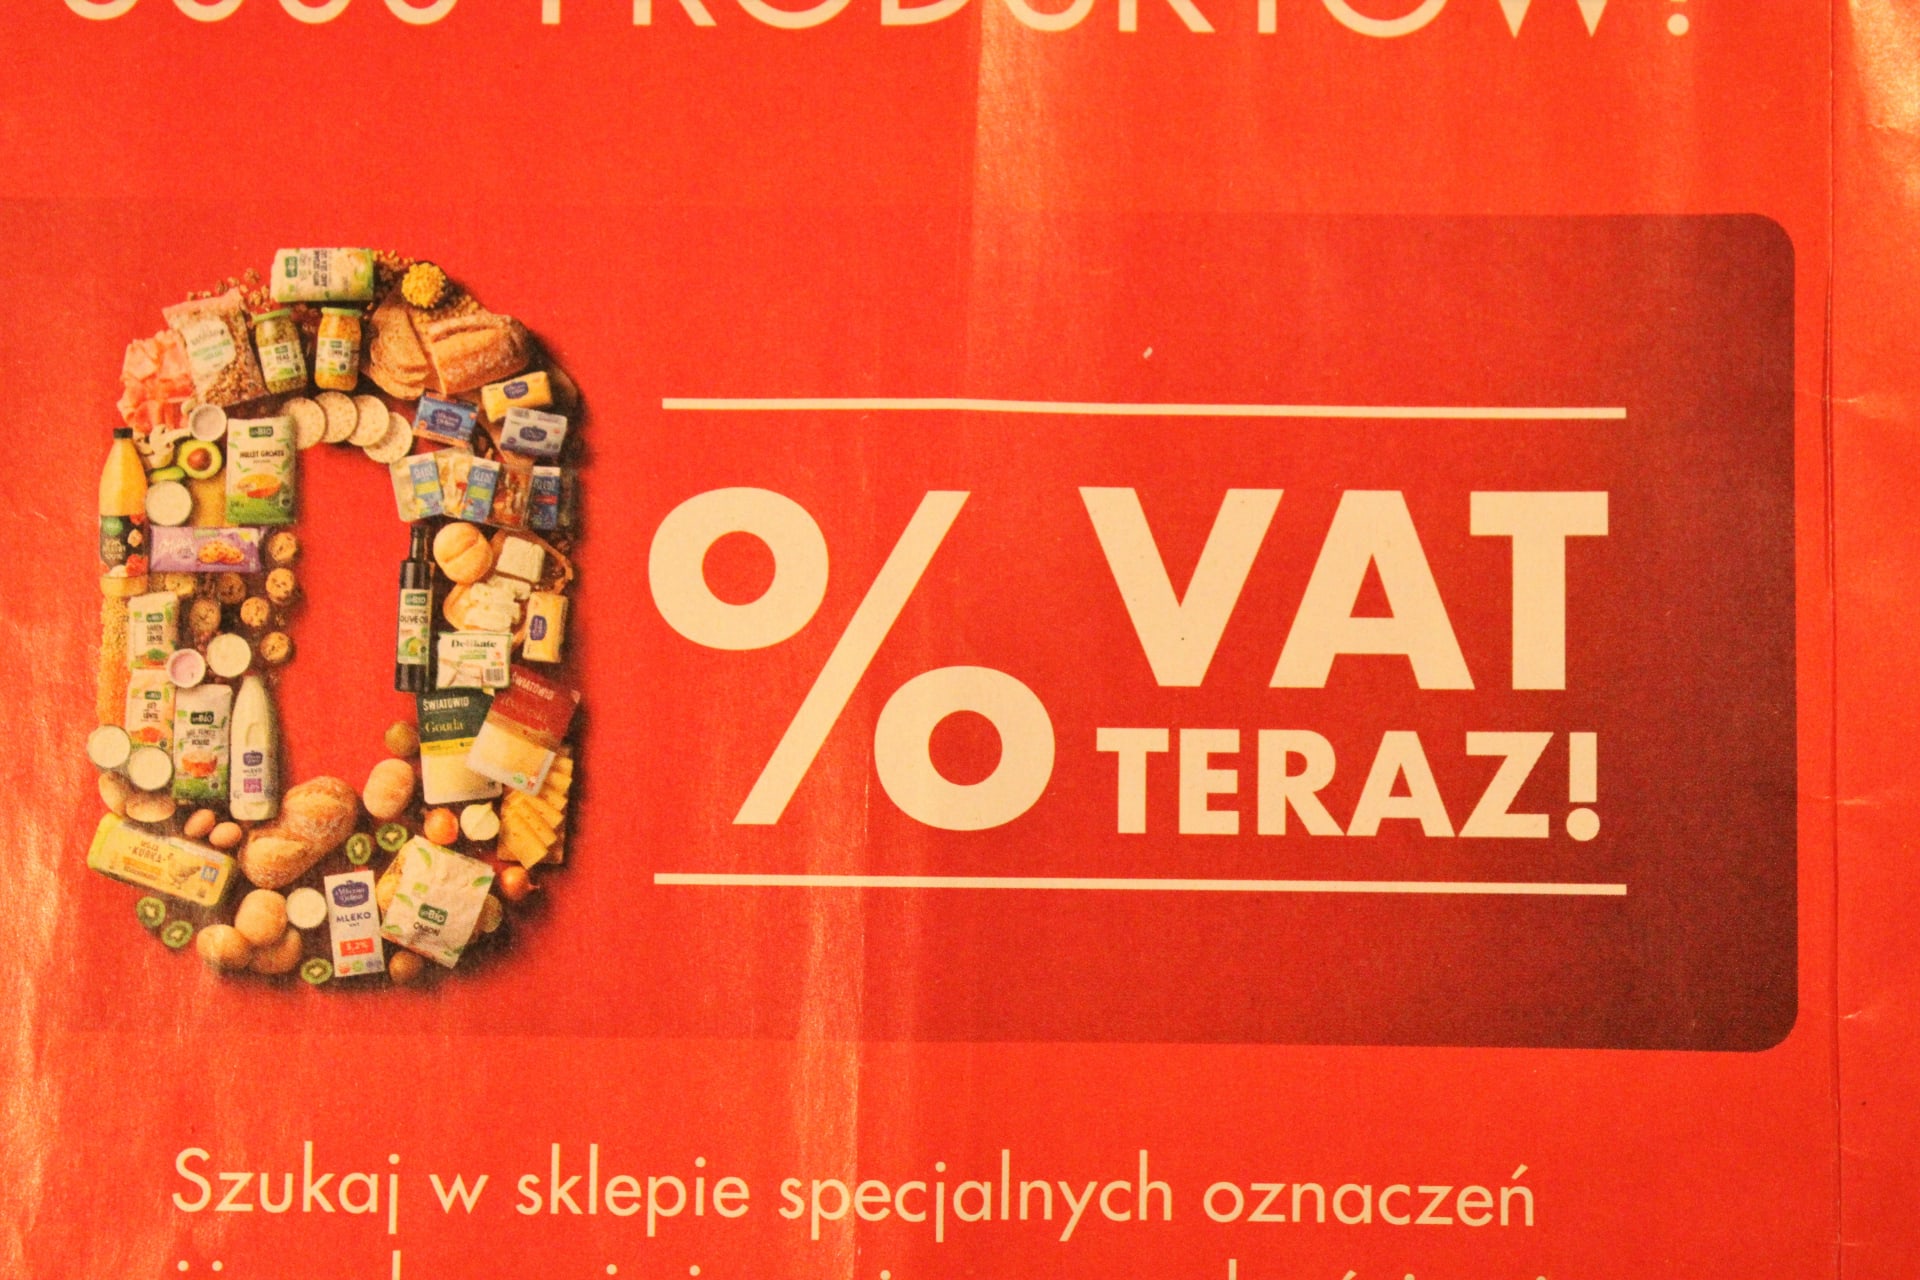 Od úterý 1. února polská vláda zrušila DPH na základní potraviny. Řetězec Biedronka nabízí bez DPH (polsky VAT) 3000 produktů.